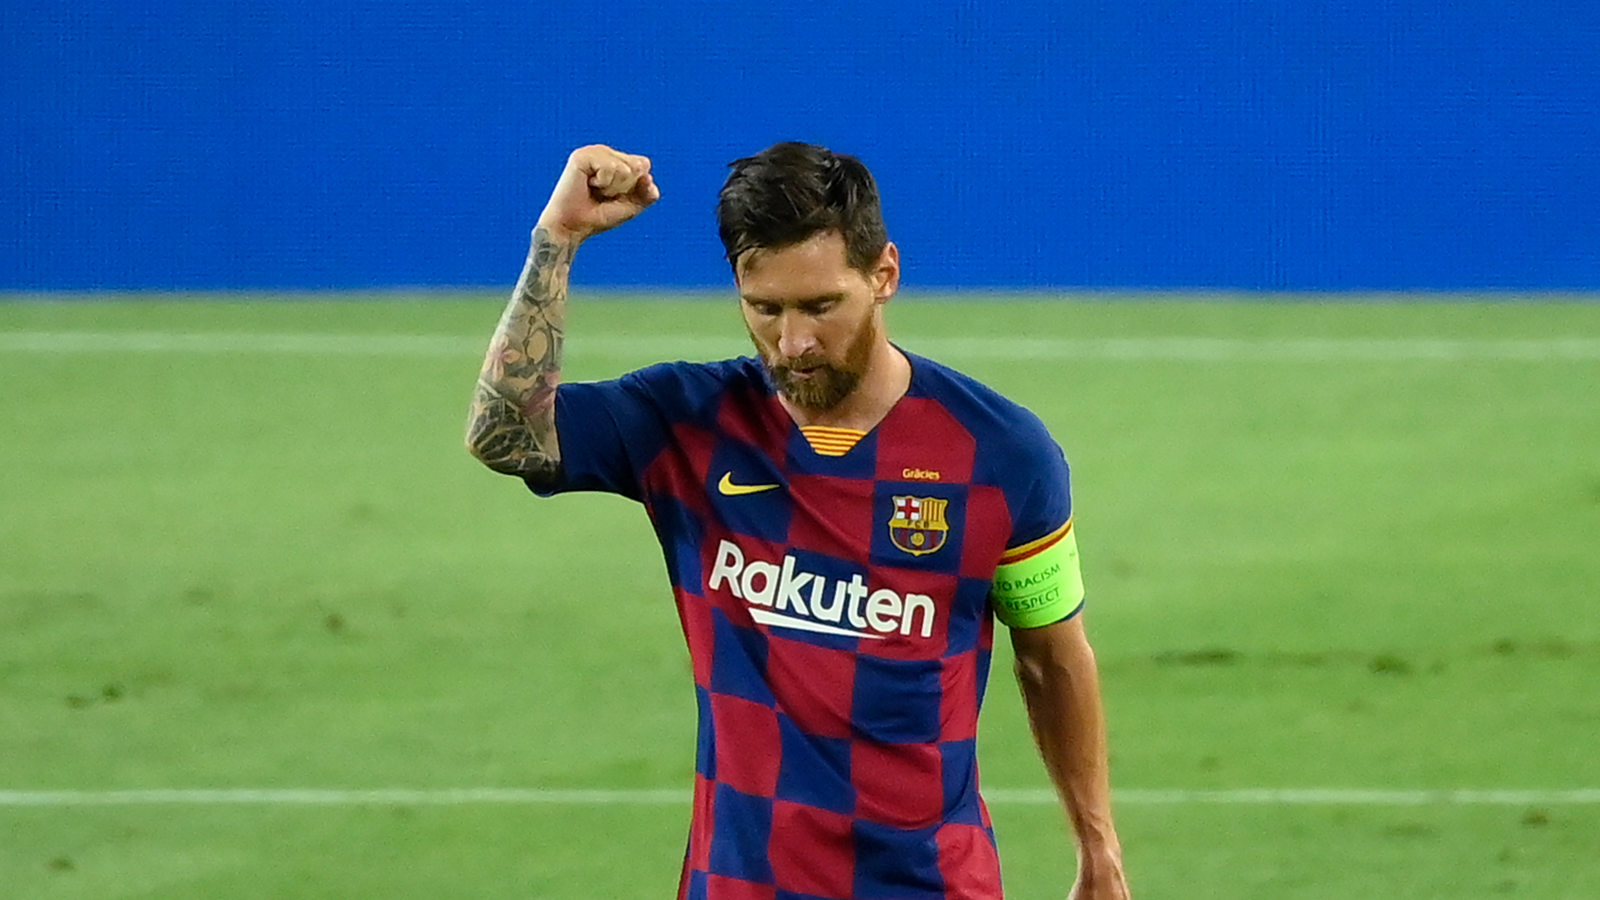 Bạn muốn học hỏi bí kíp thành công của thành viên đội tuyển Barcelona và cầu thủ bóng đá nổi tiếng thế giới - Lionel Messi? Bức ảnh này chắc chắn sẽ lôi cuốn bạn với những hình ảnh tuyệt đẹp và chân thật về cuộc đời và sự nghiệp của anh ấy.